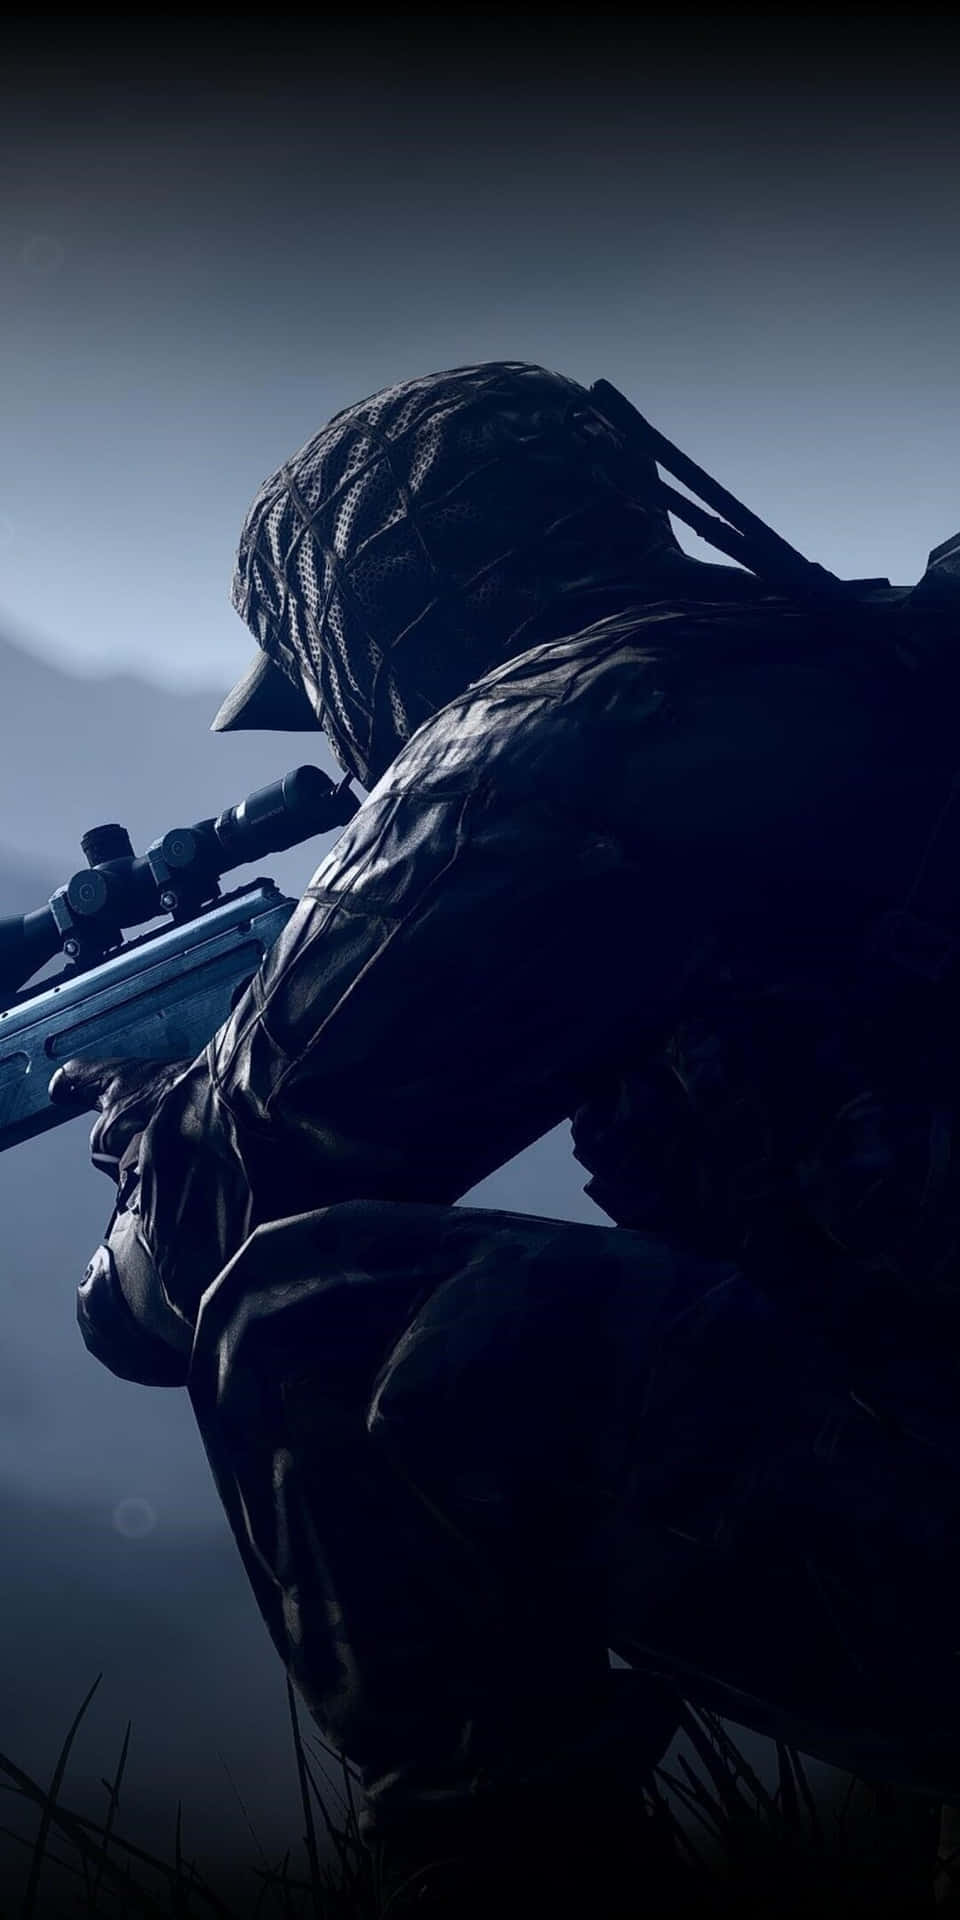 Fondode Pantalla Del Pixel 3 Con El Tema De Sniper En Battlefield 4.